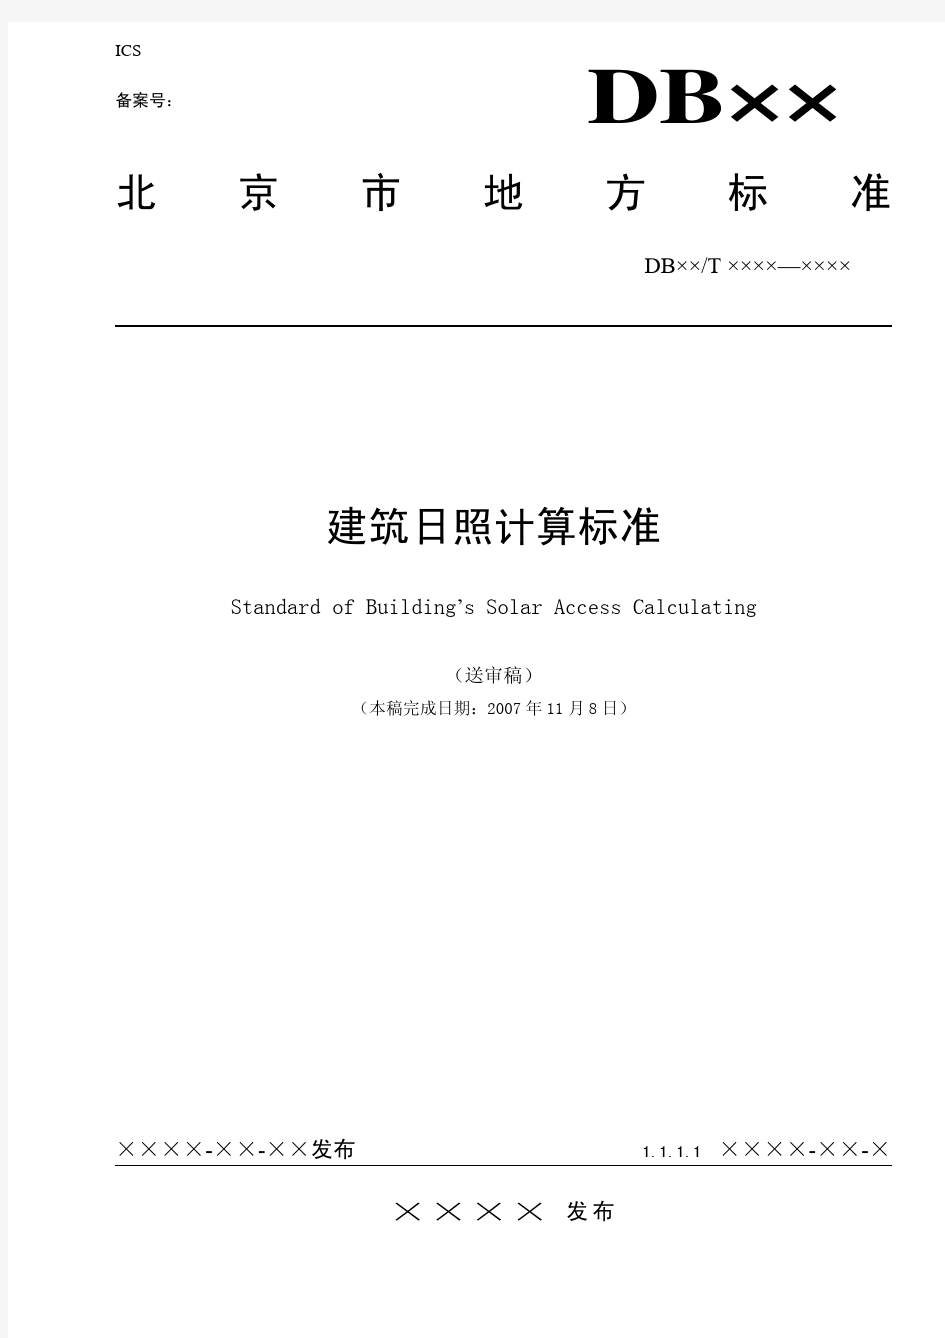 北京-北京市日照分析计算标准(送审稿)